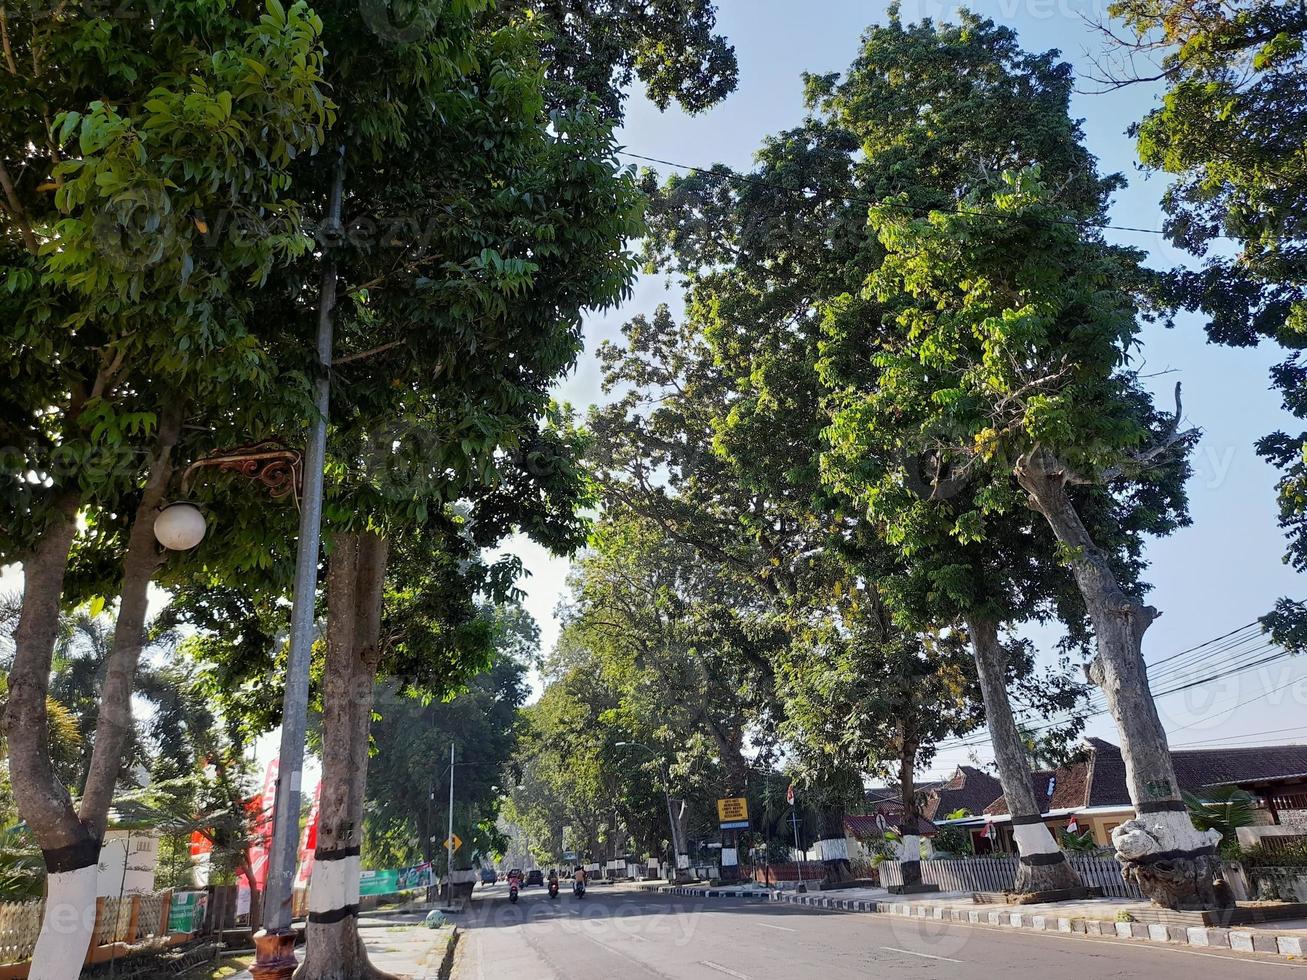 de atmosfeer van de weg Aan de eiland van lombok waar beide zijden van de weg zijn overwoekerd met bomen foto